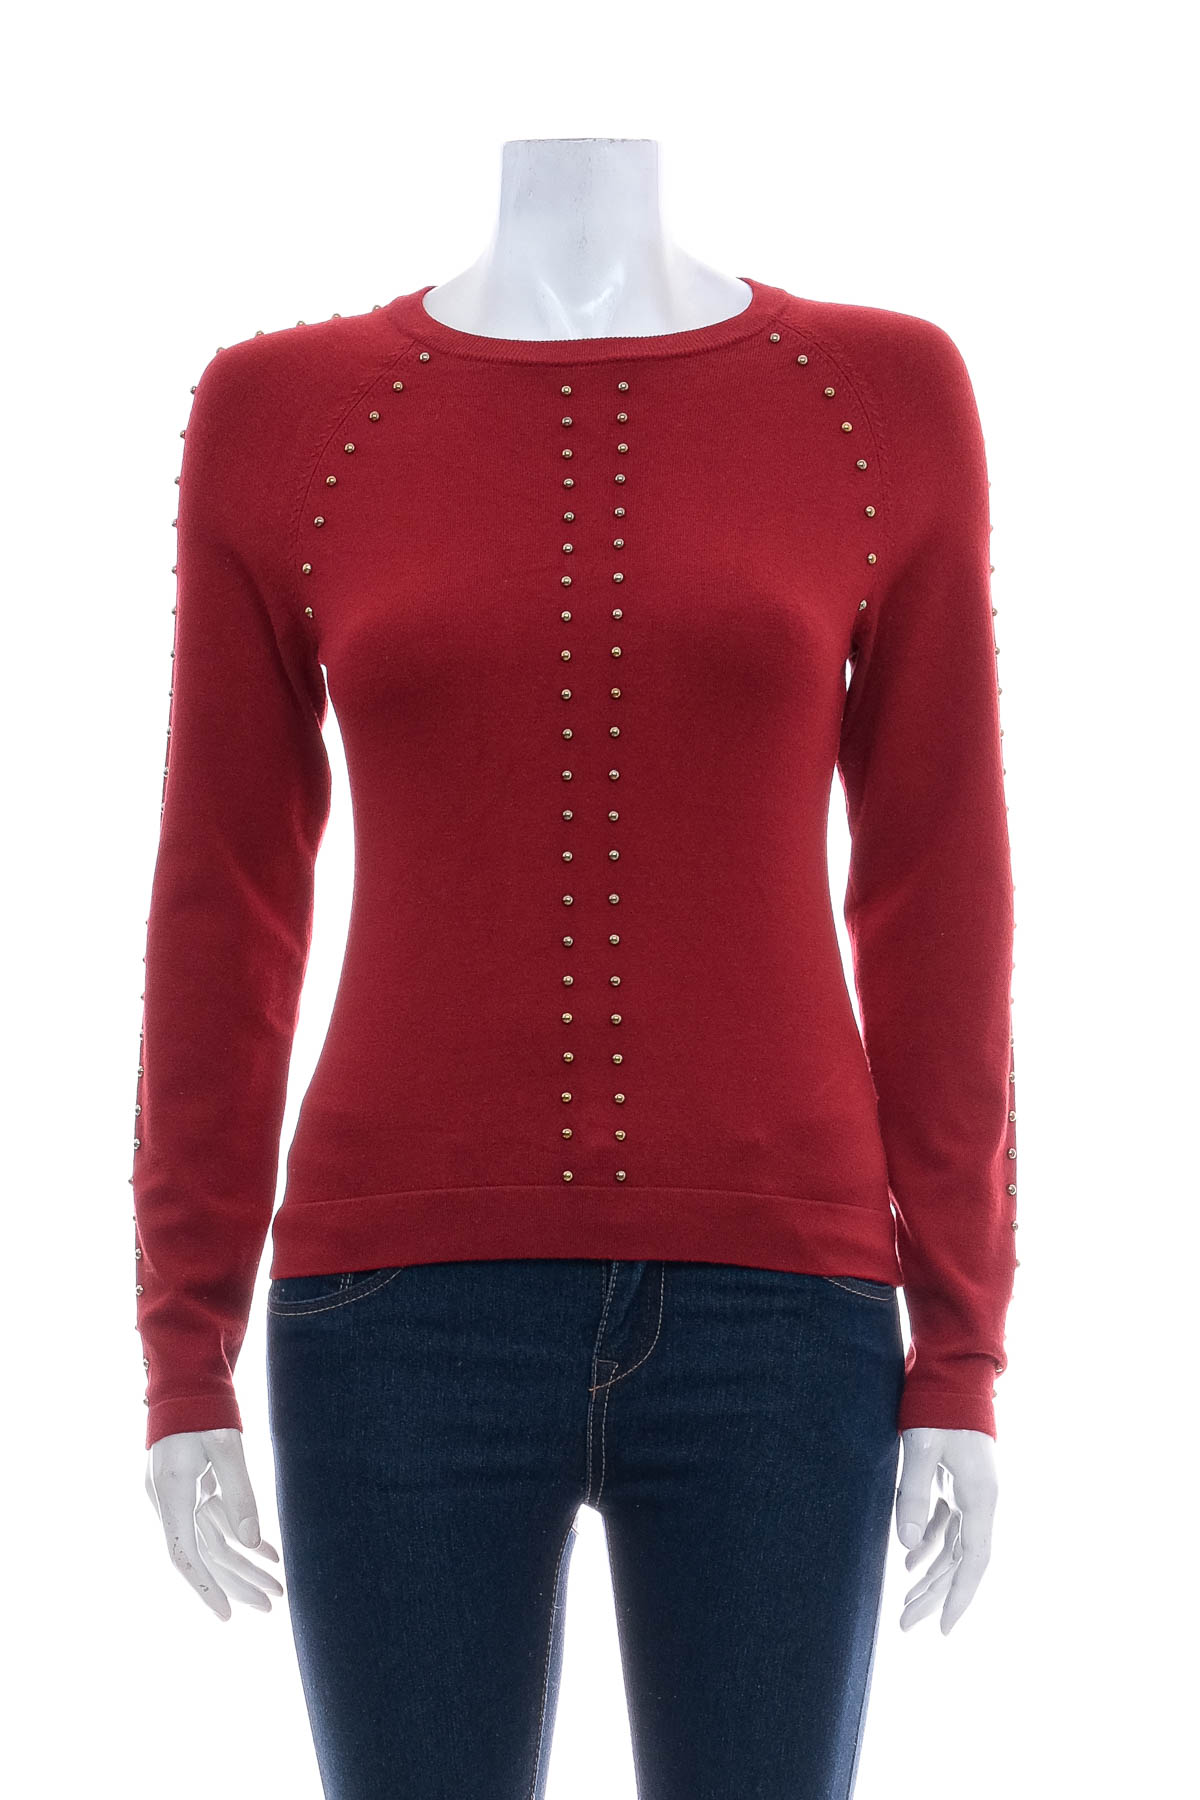 Women's sweater - Karen Millen - 0